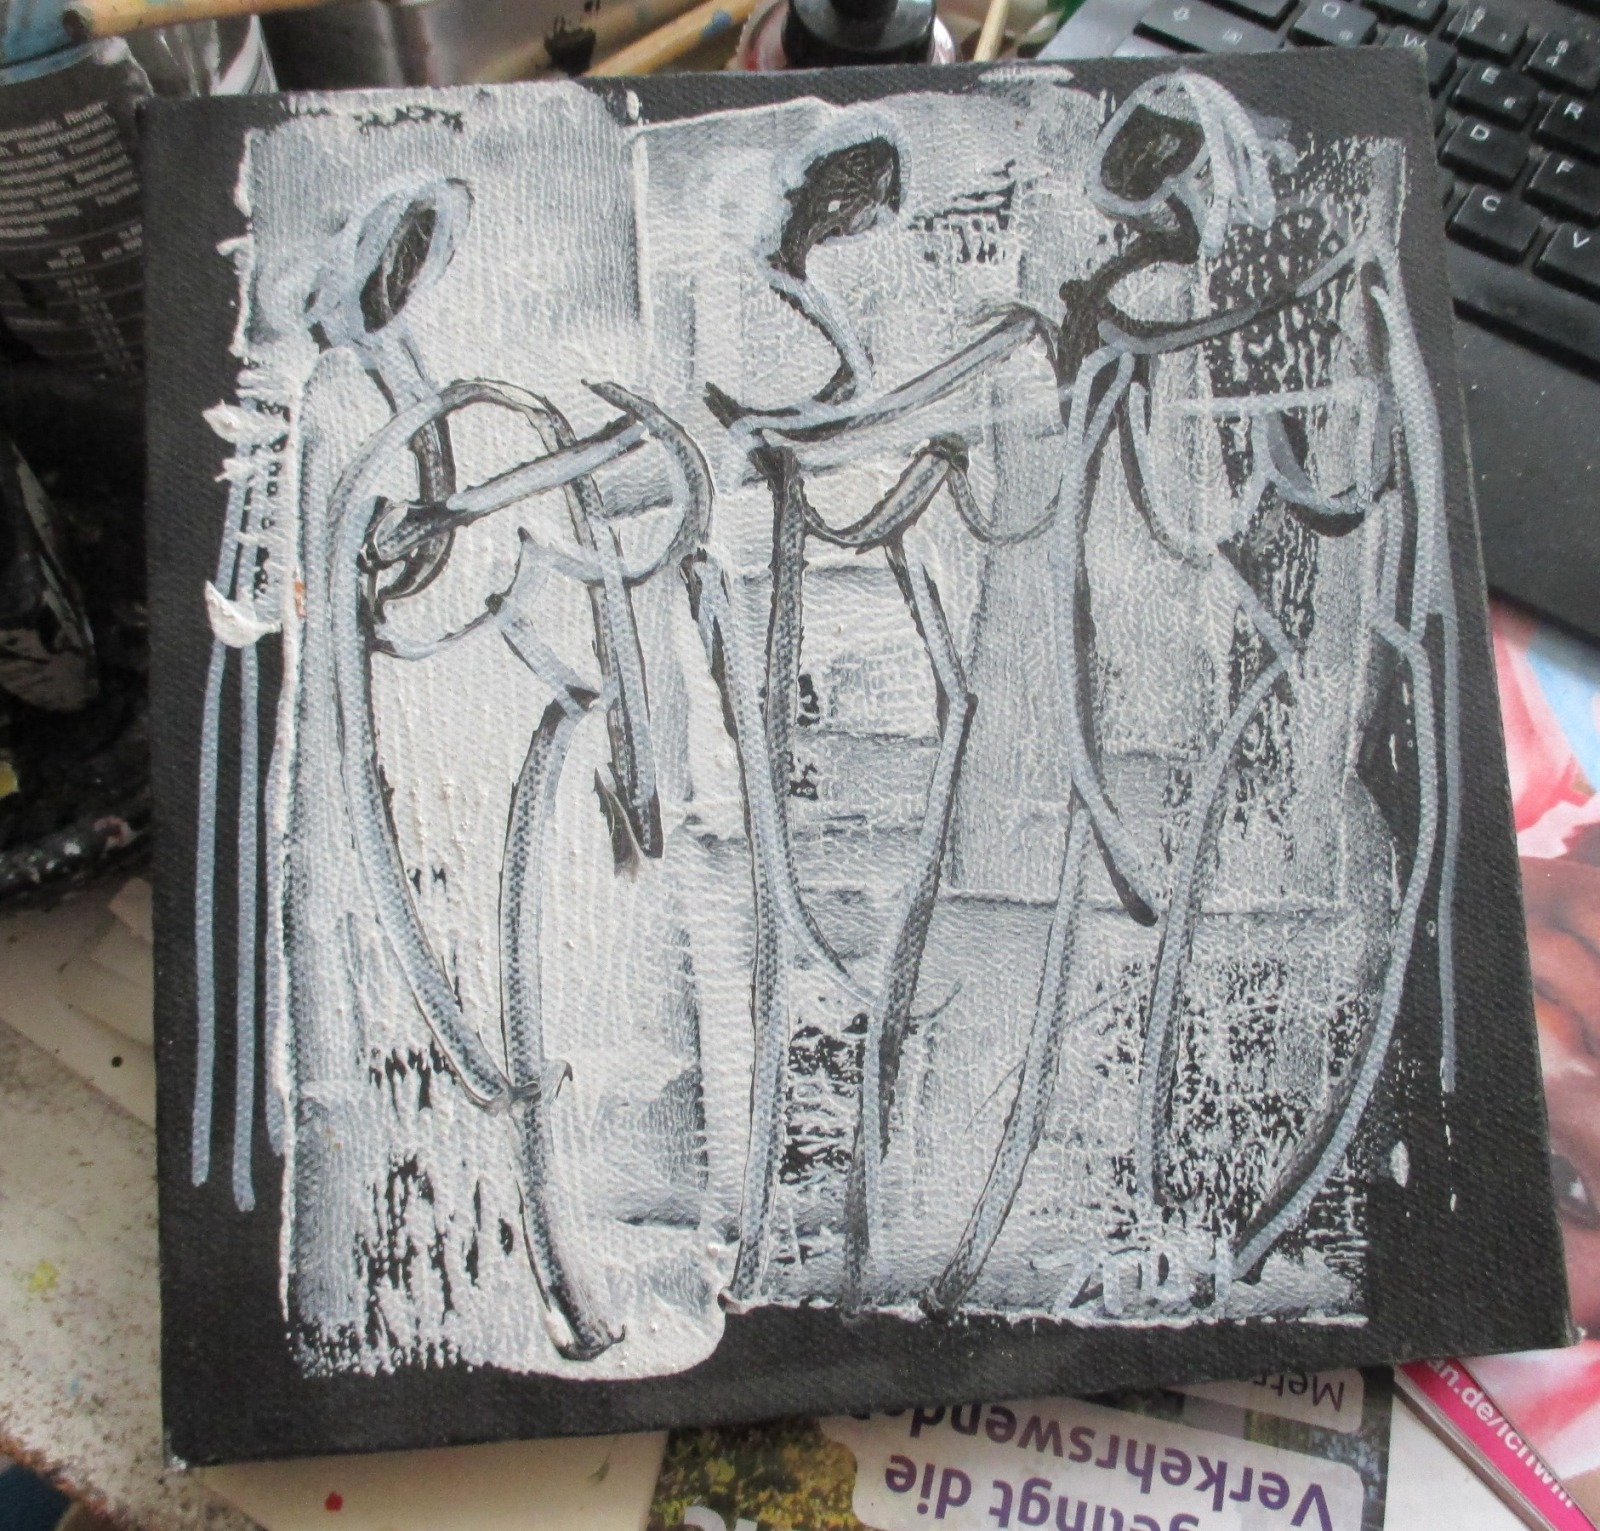 Frauen in schwarz-weiss Original-Zeichnungen auf Leinwand Acrylmalerei 20x20cm 2